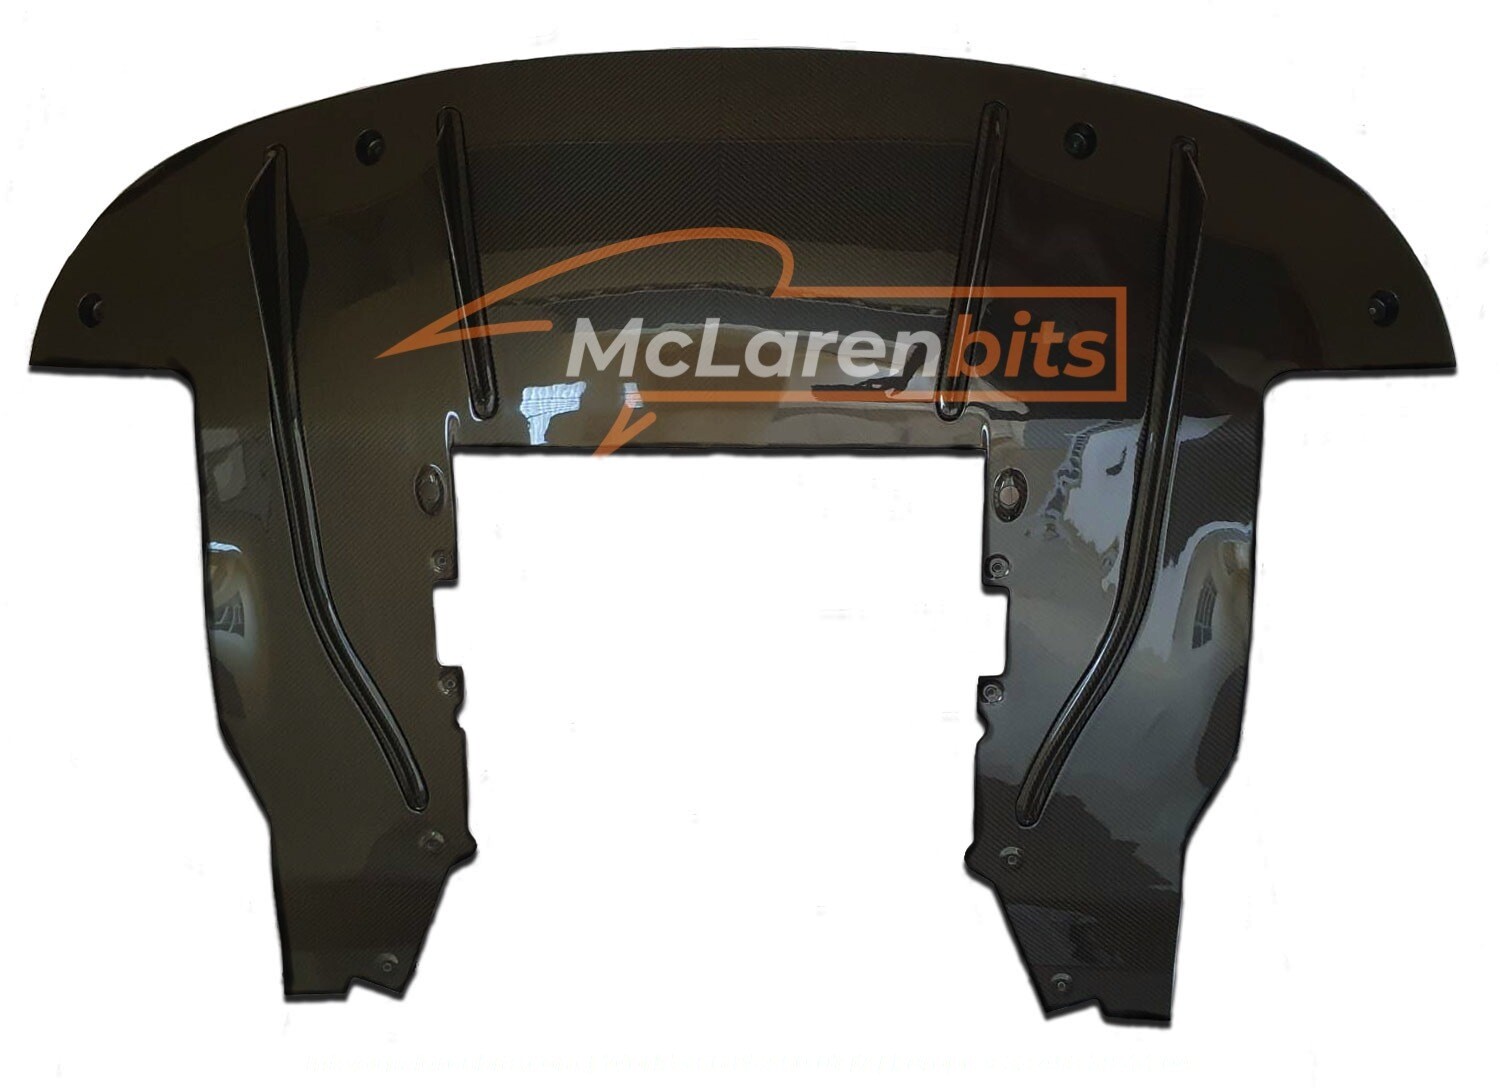 McLaren 720s Diffuser stock design